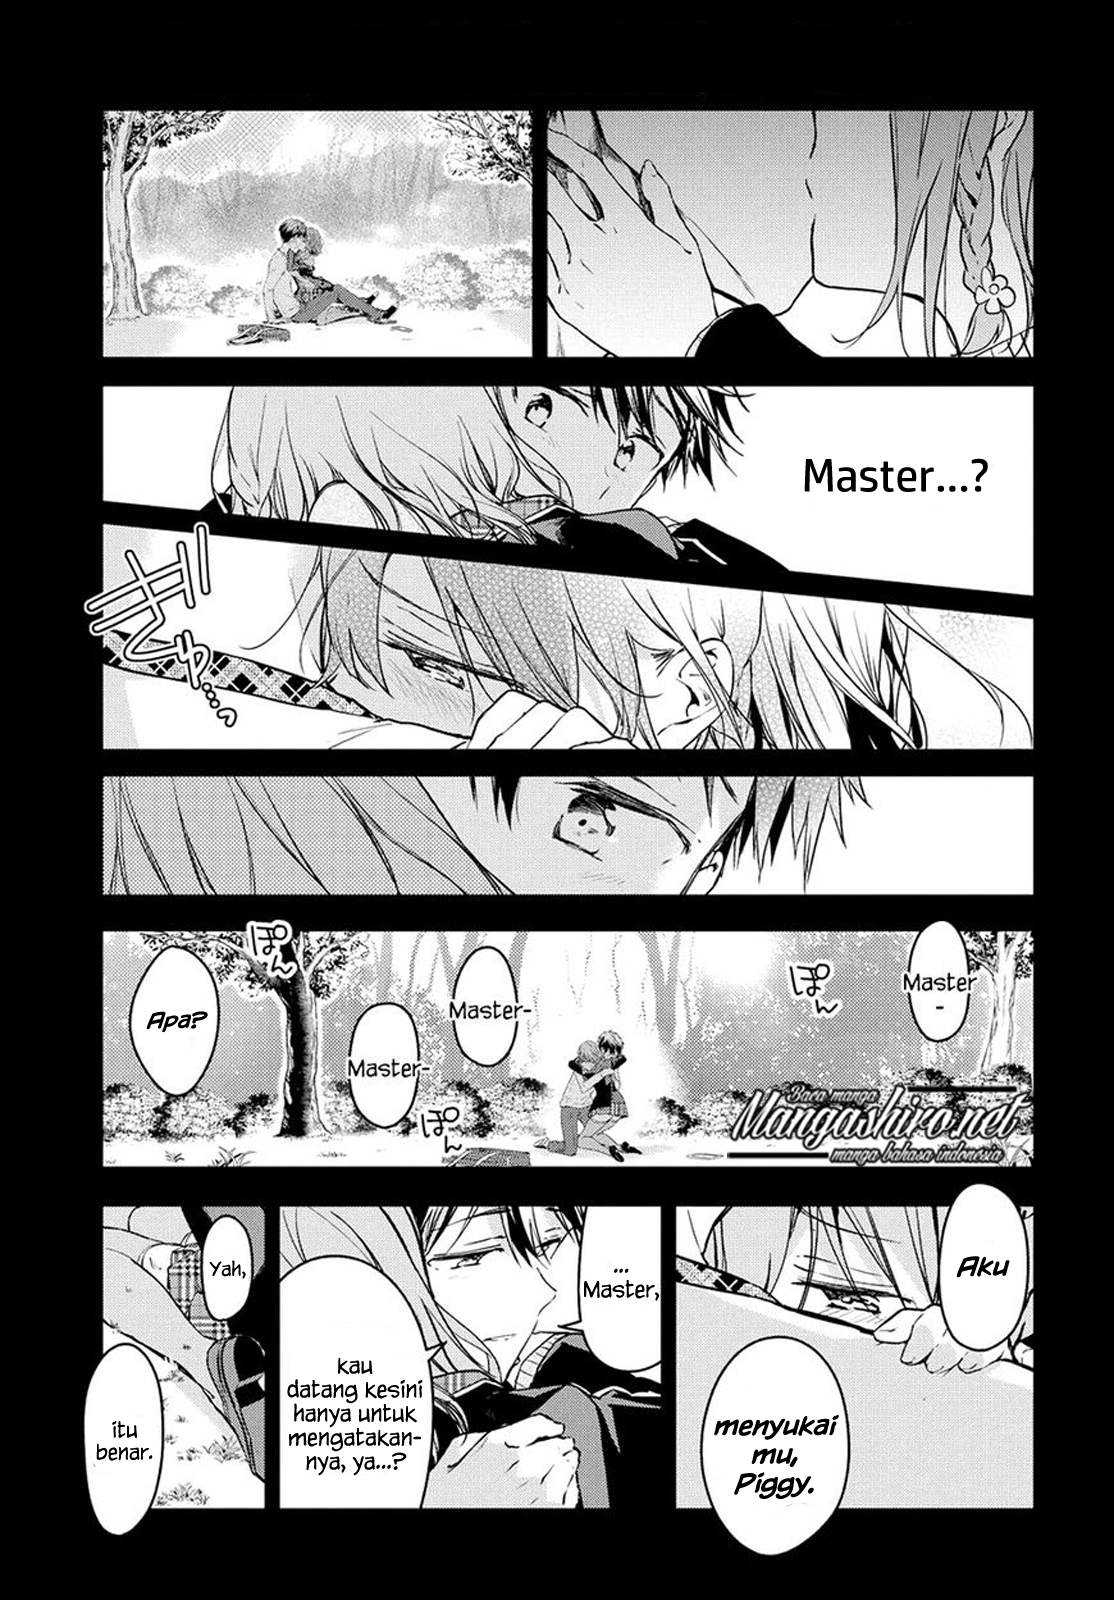 Masamune-kun no Revenge Chapter 49